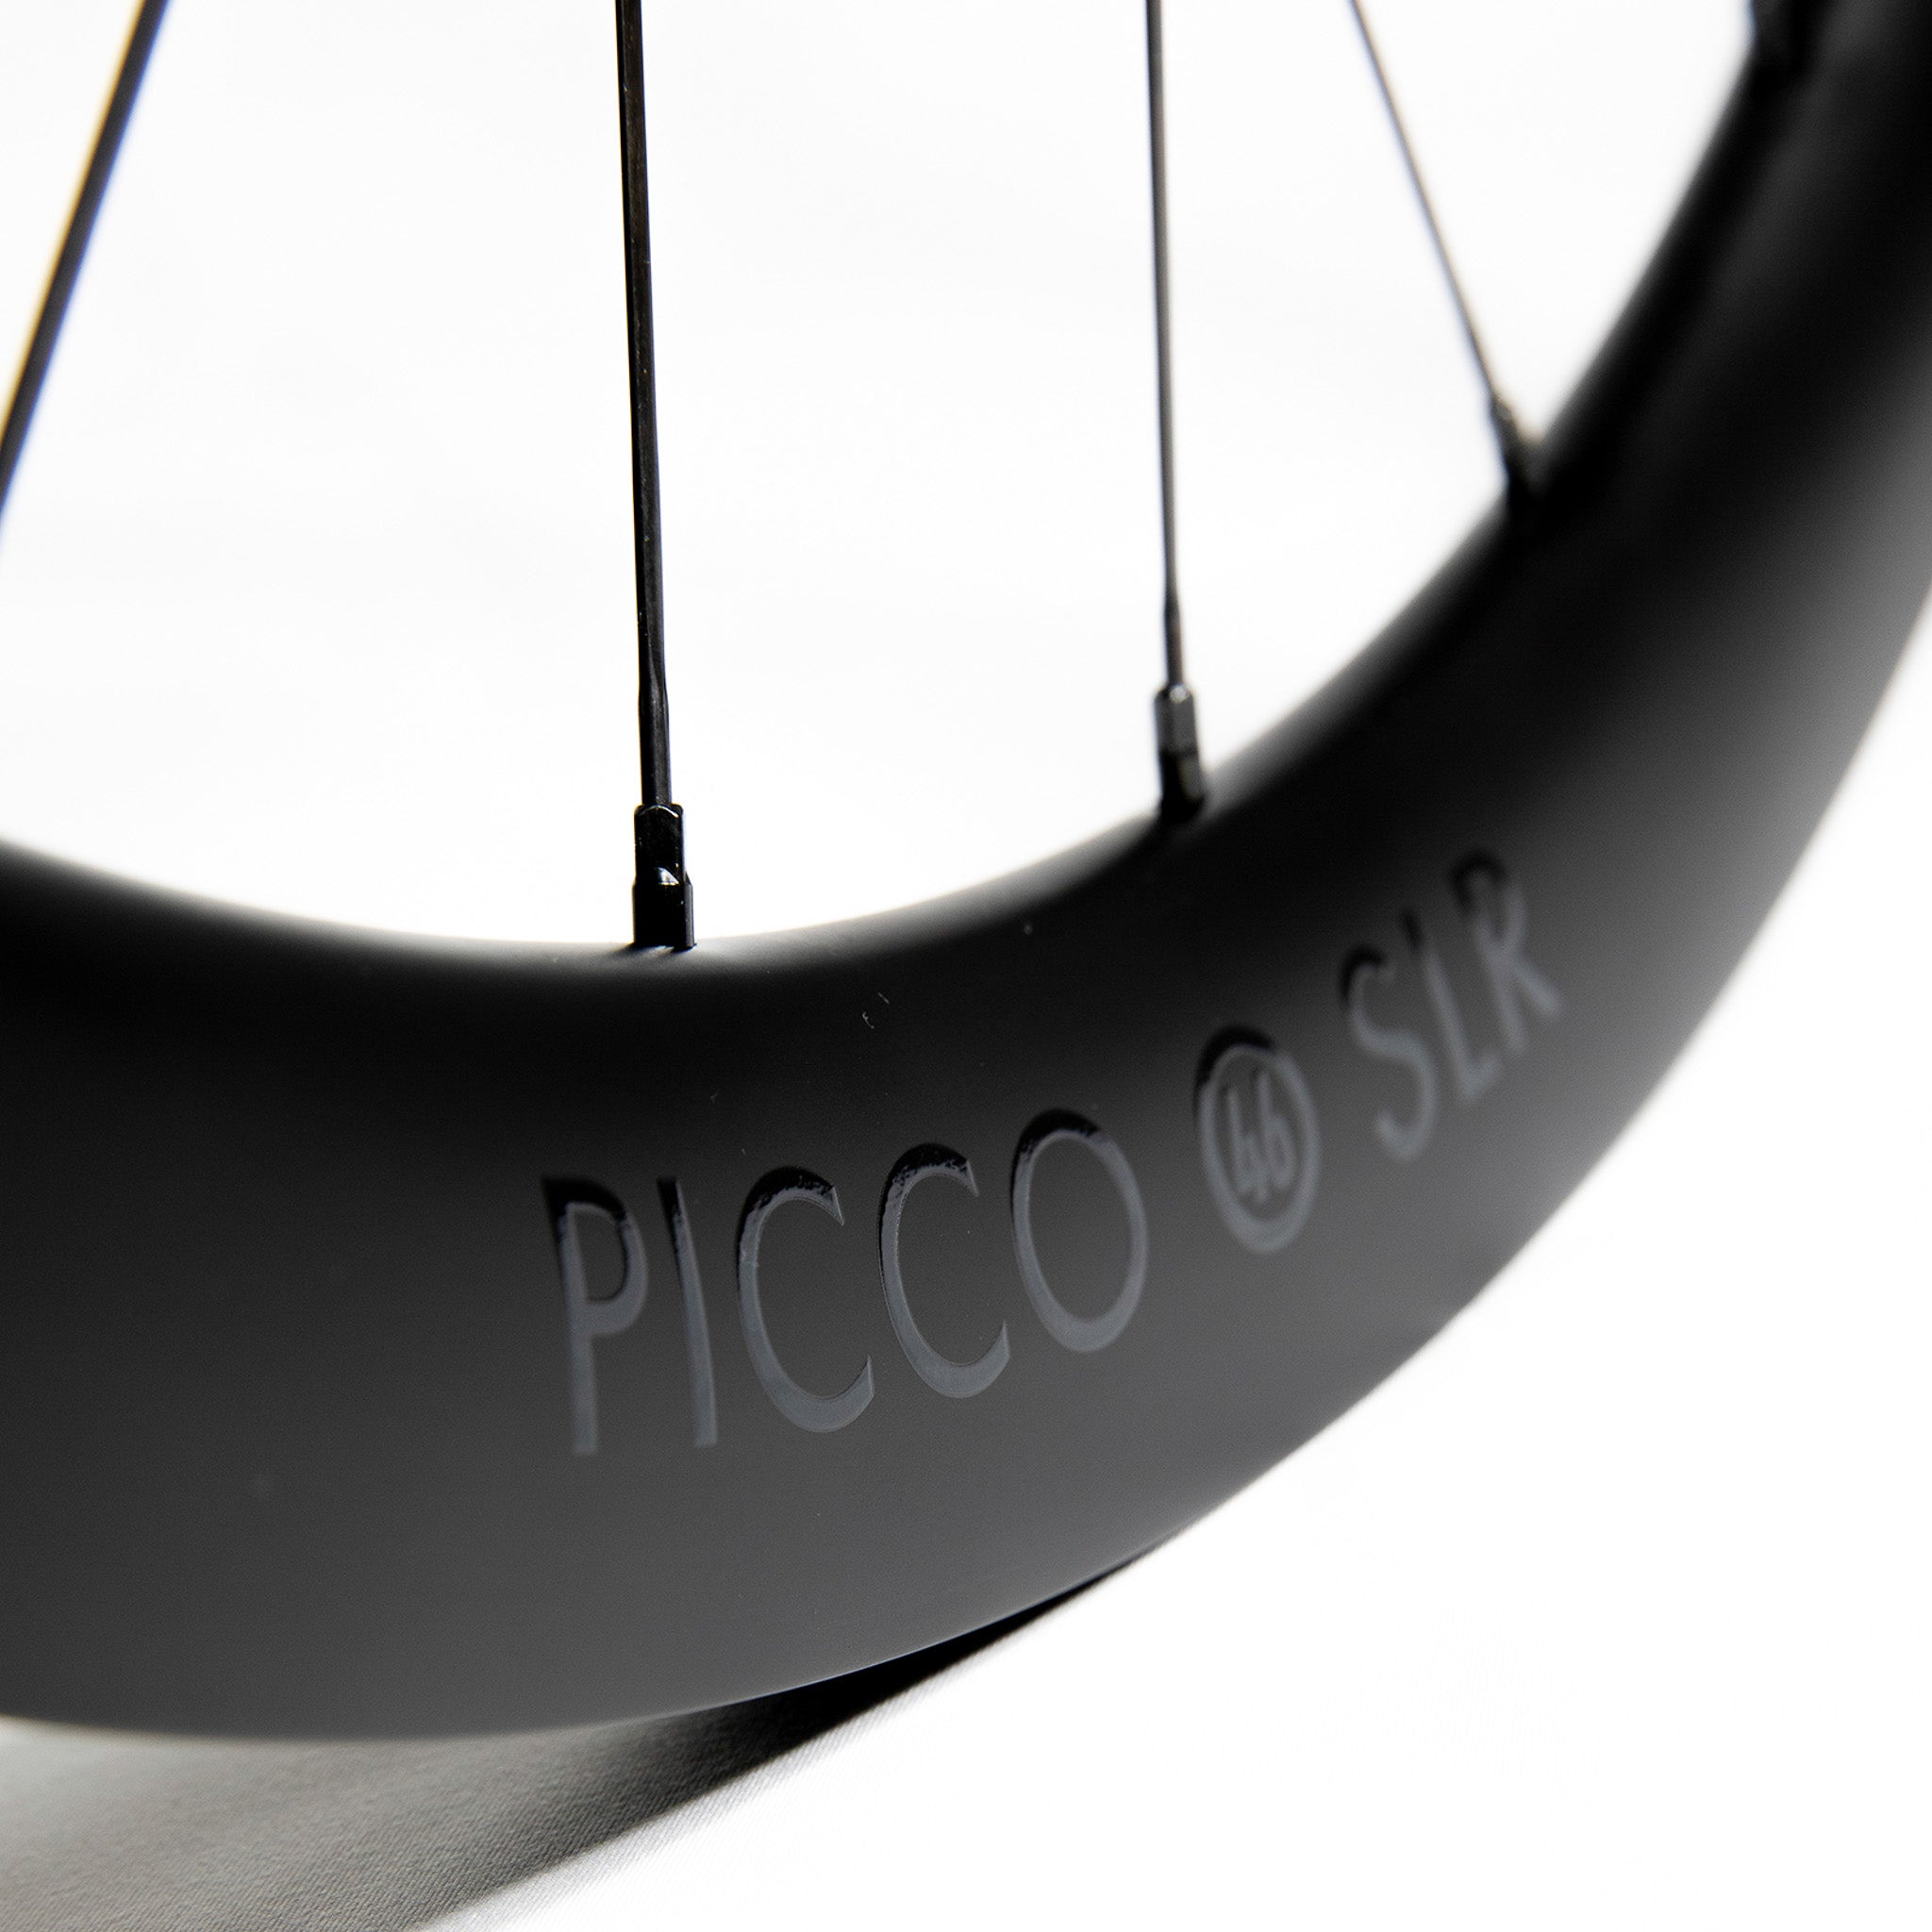 Picco SLR Wheelset